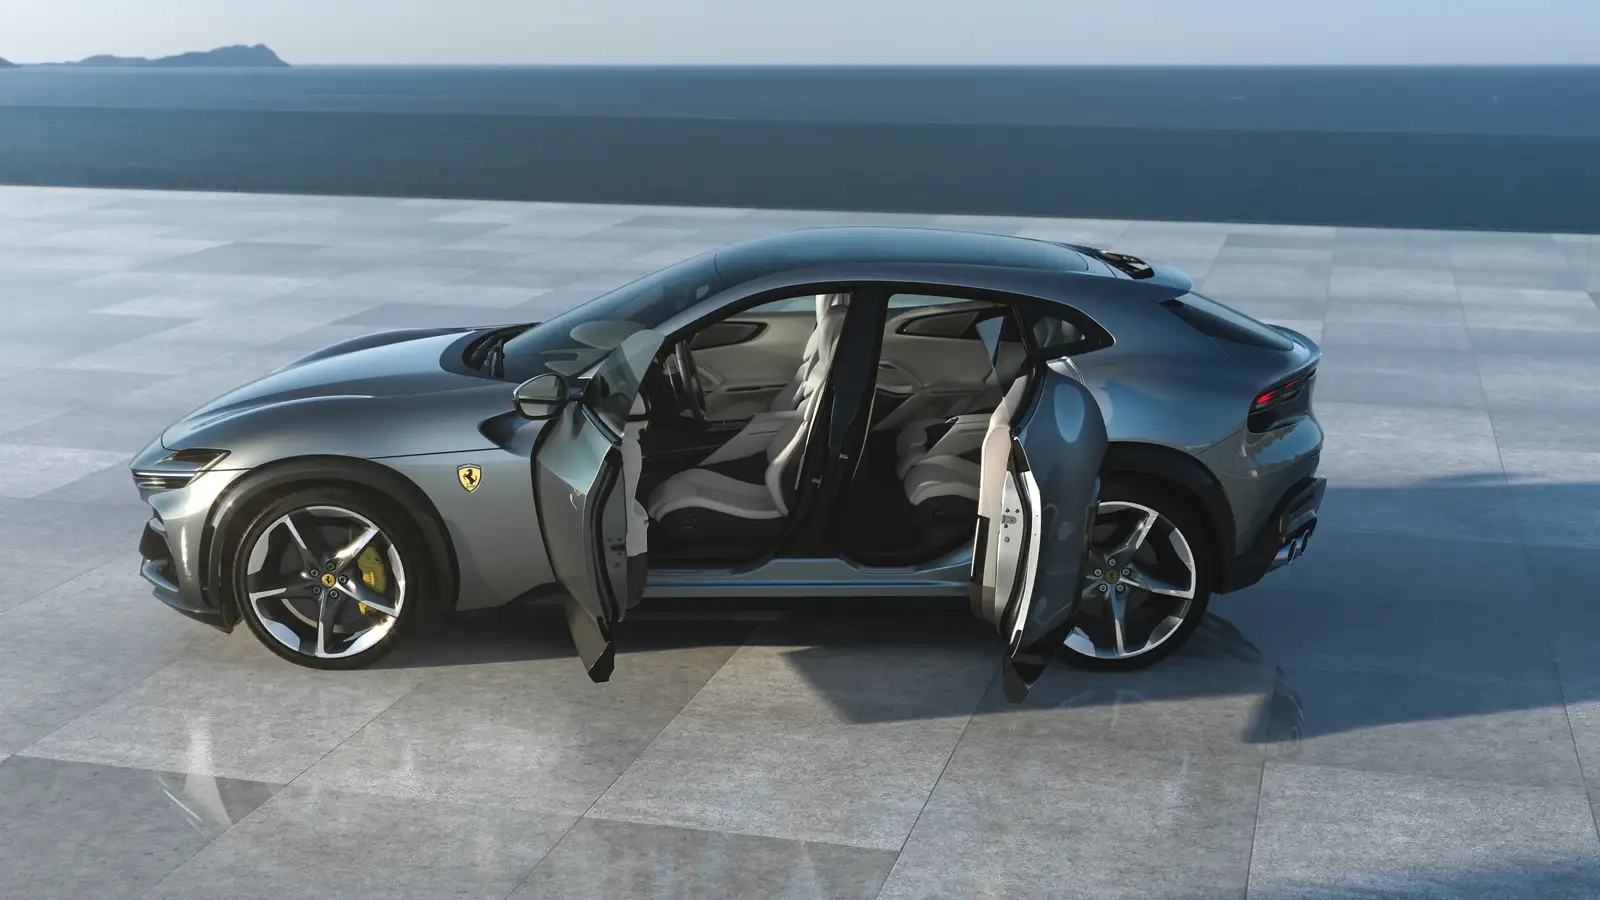 2023 Ferrari Purosangue SUV: We've Got Long-Awaited Images and Info